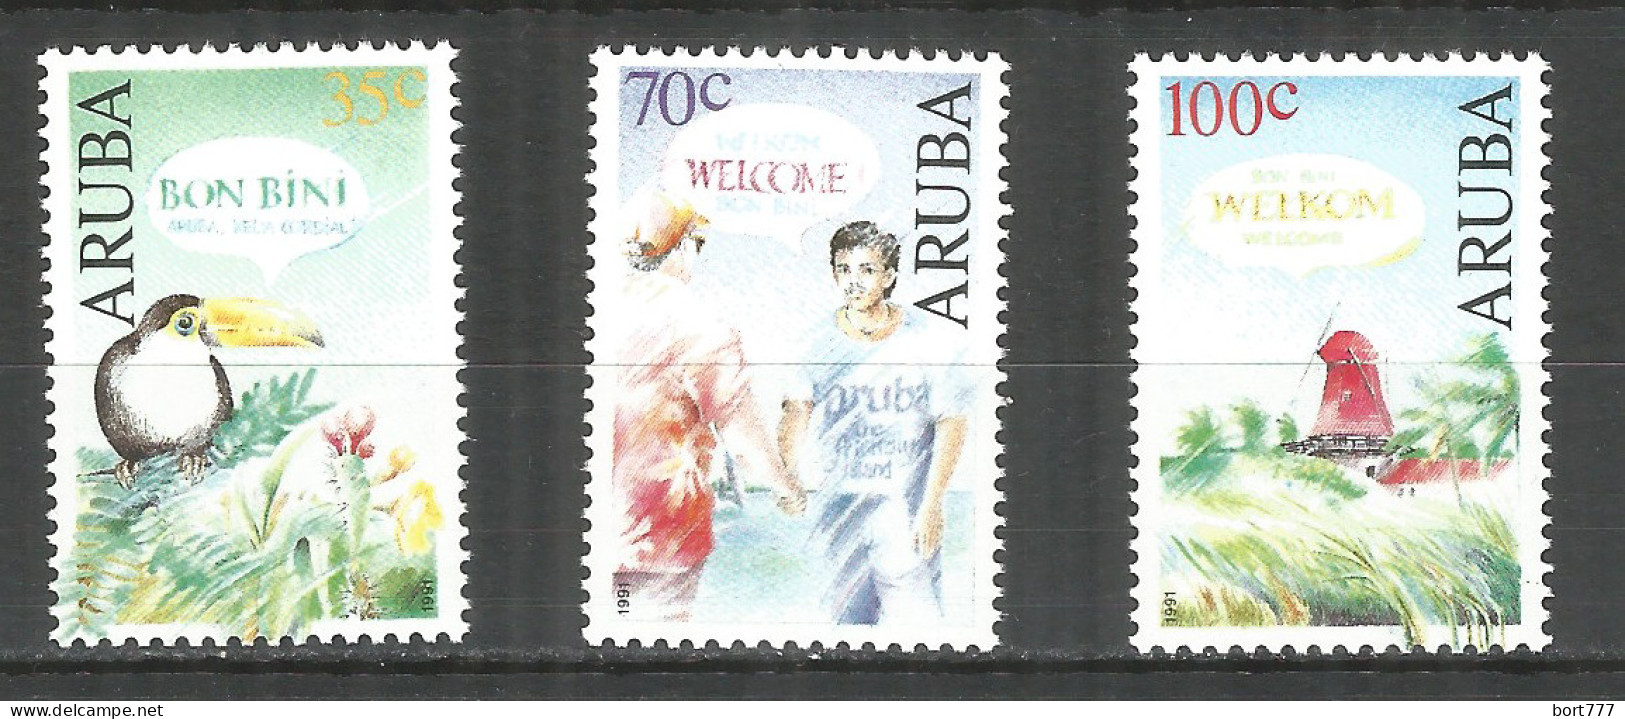 NETHERLANDS ARUBA 1991 Year , Mint Stamps MNH (**)   Michel# 100-102 Birds - Curacao, Netherlands Antilles, Aruba